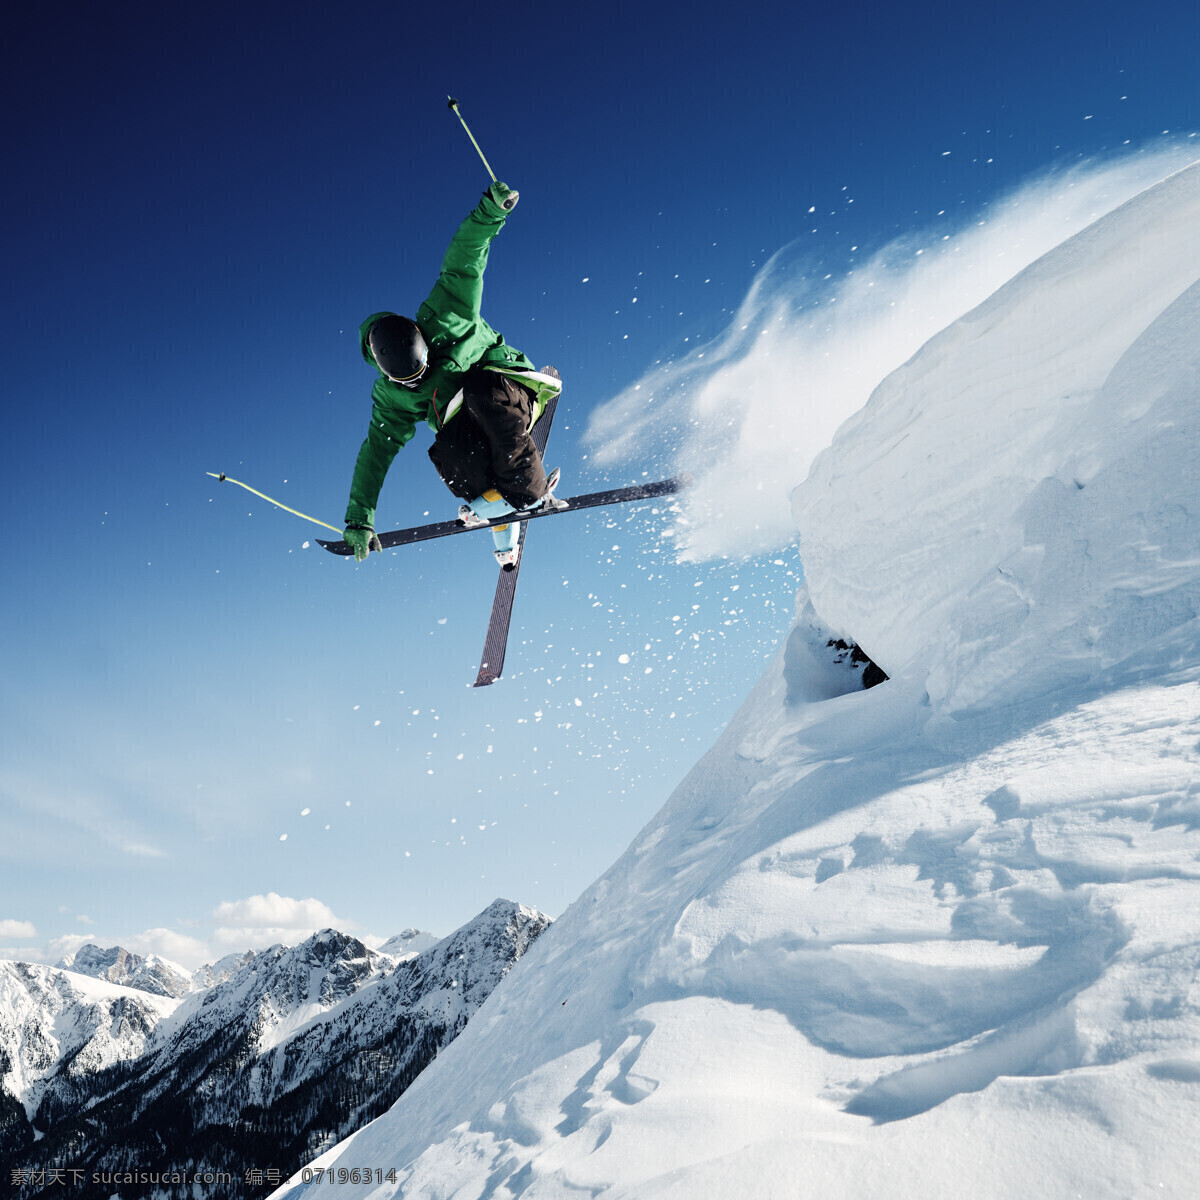 雪山 上 滑雪 运动员 跳跃 体育运动 户外运动 极限运动 滑雪图片 生活百科